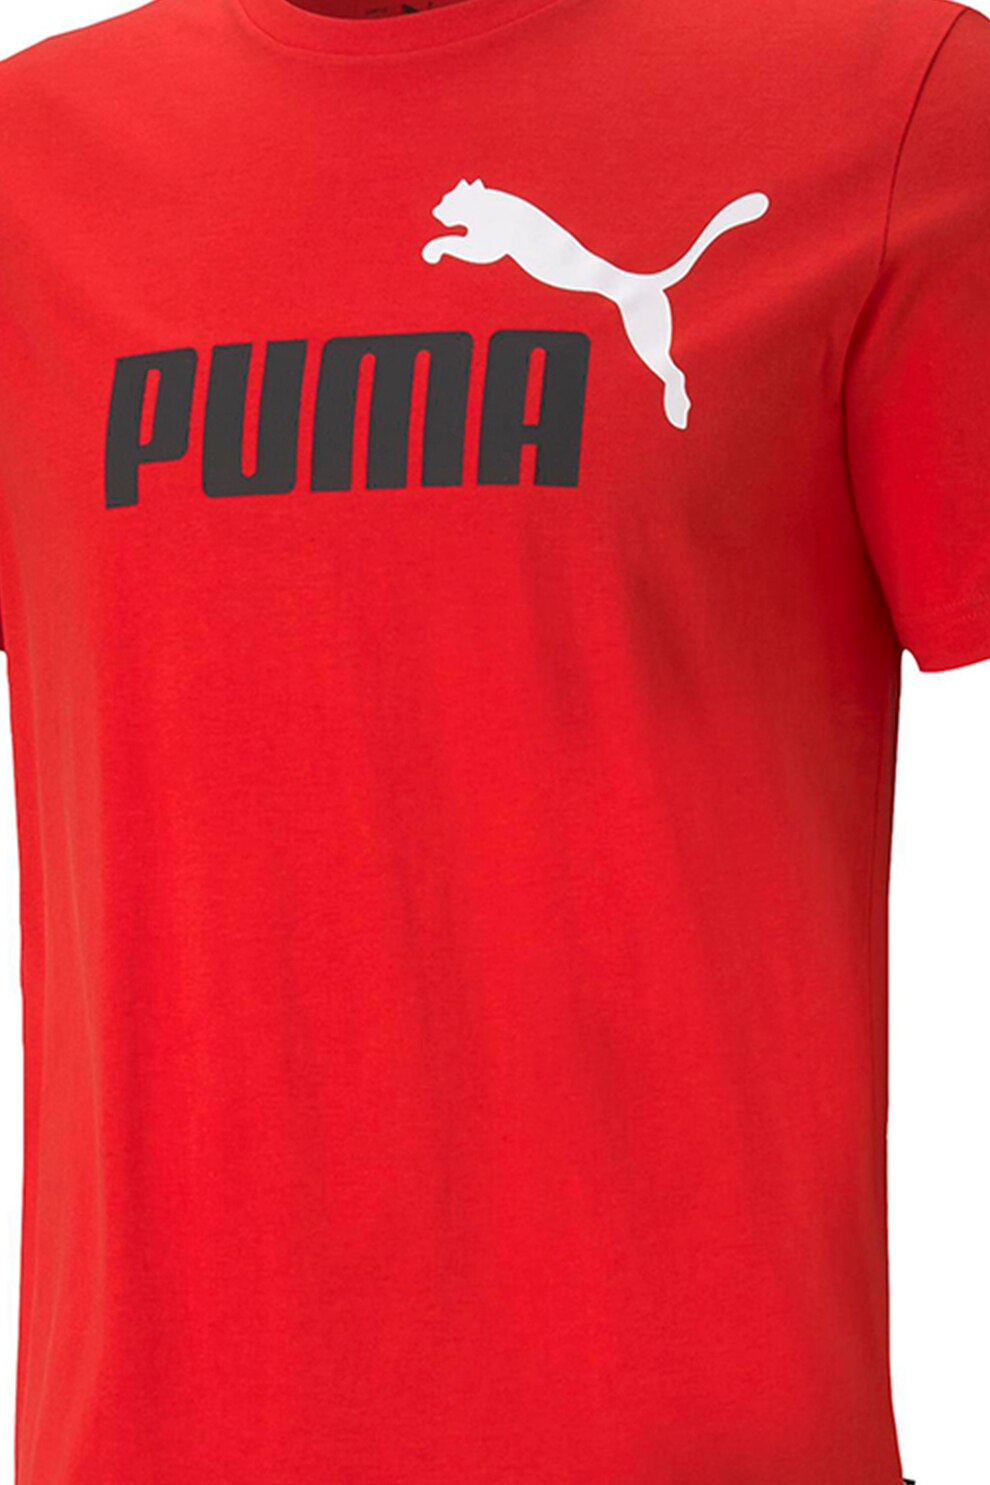 Puma, Памучна тениска Essentials+ 2 слого, Червен, Черен, S - eMAG.bg